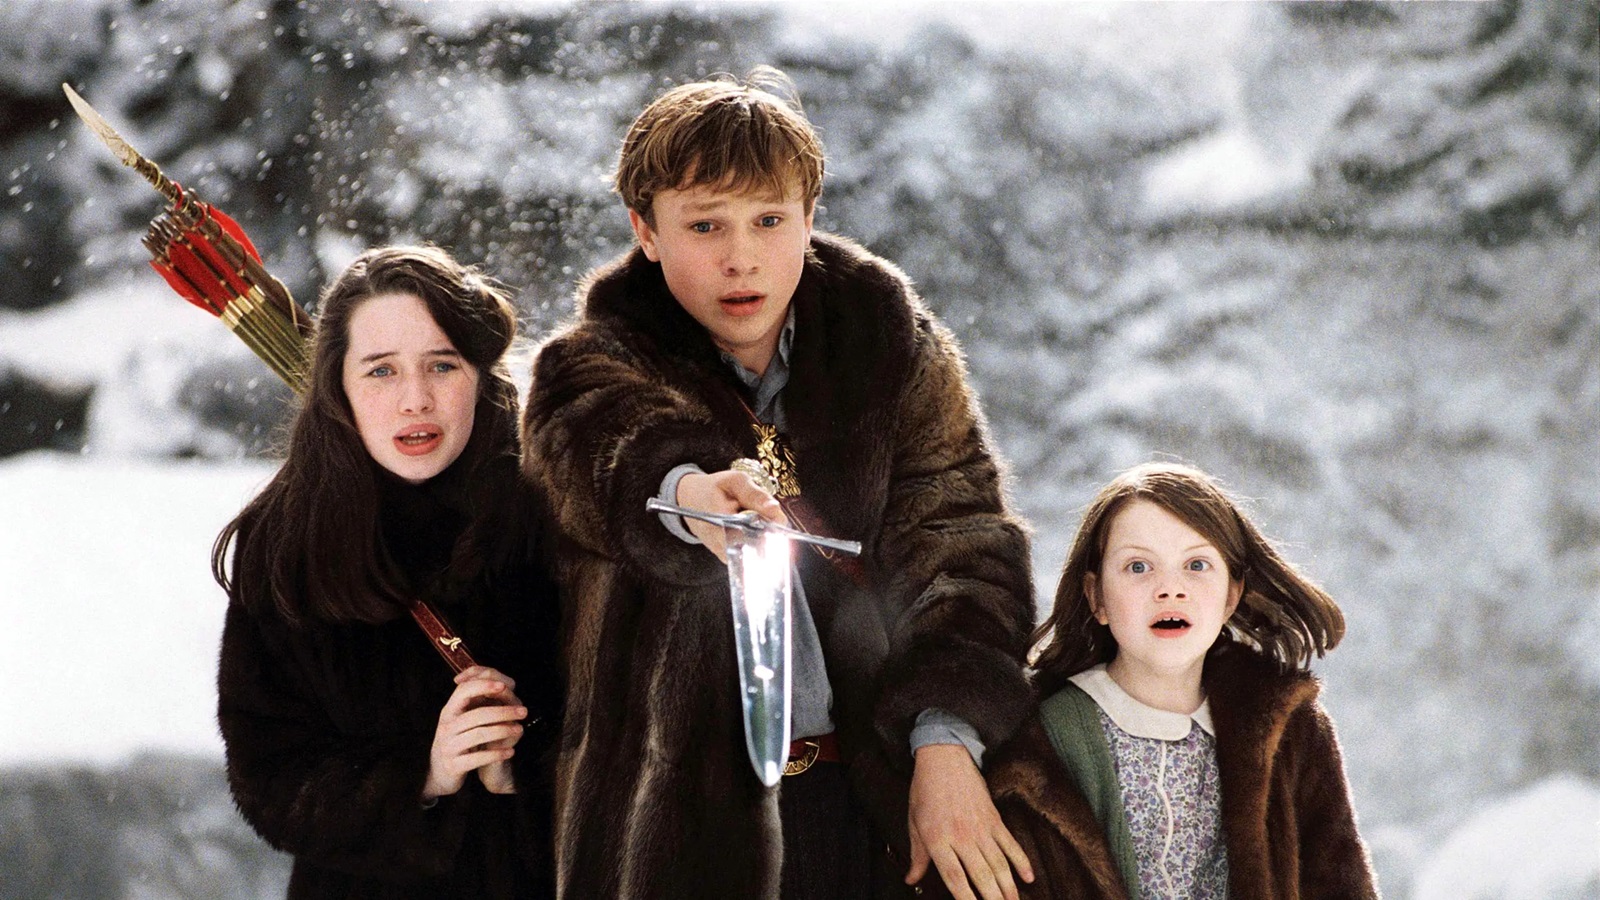 Le cronache di Narnia, Greta Gerwig svela: 'Sono molto intimorita all'idea di realizzare i film'